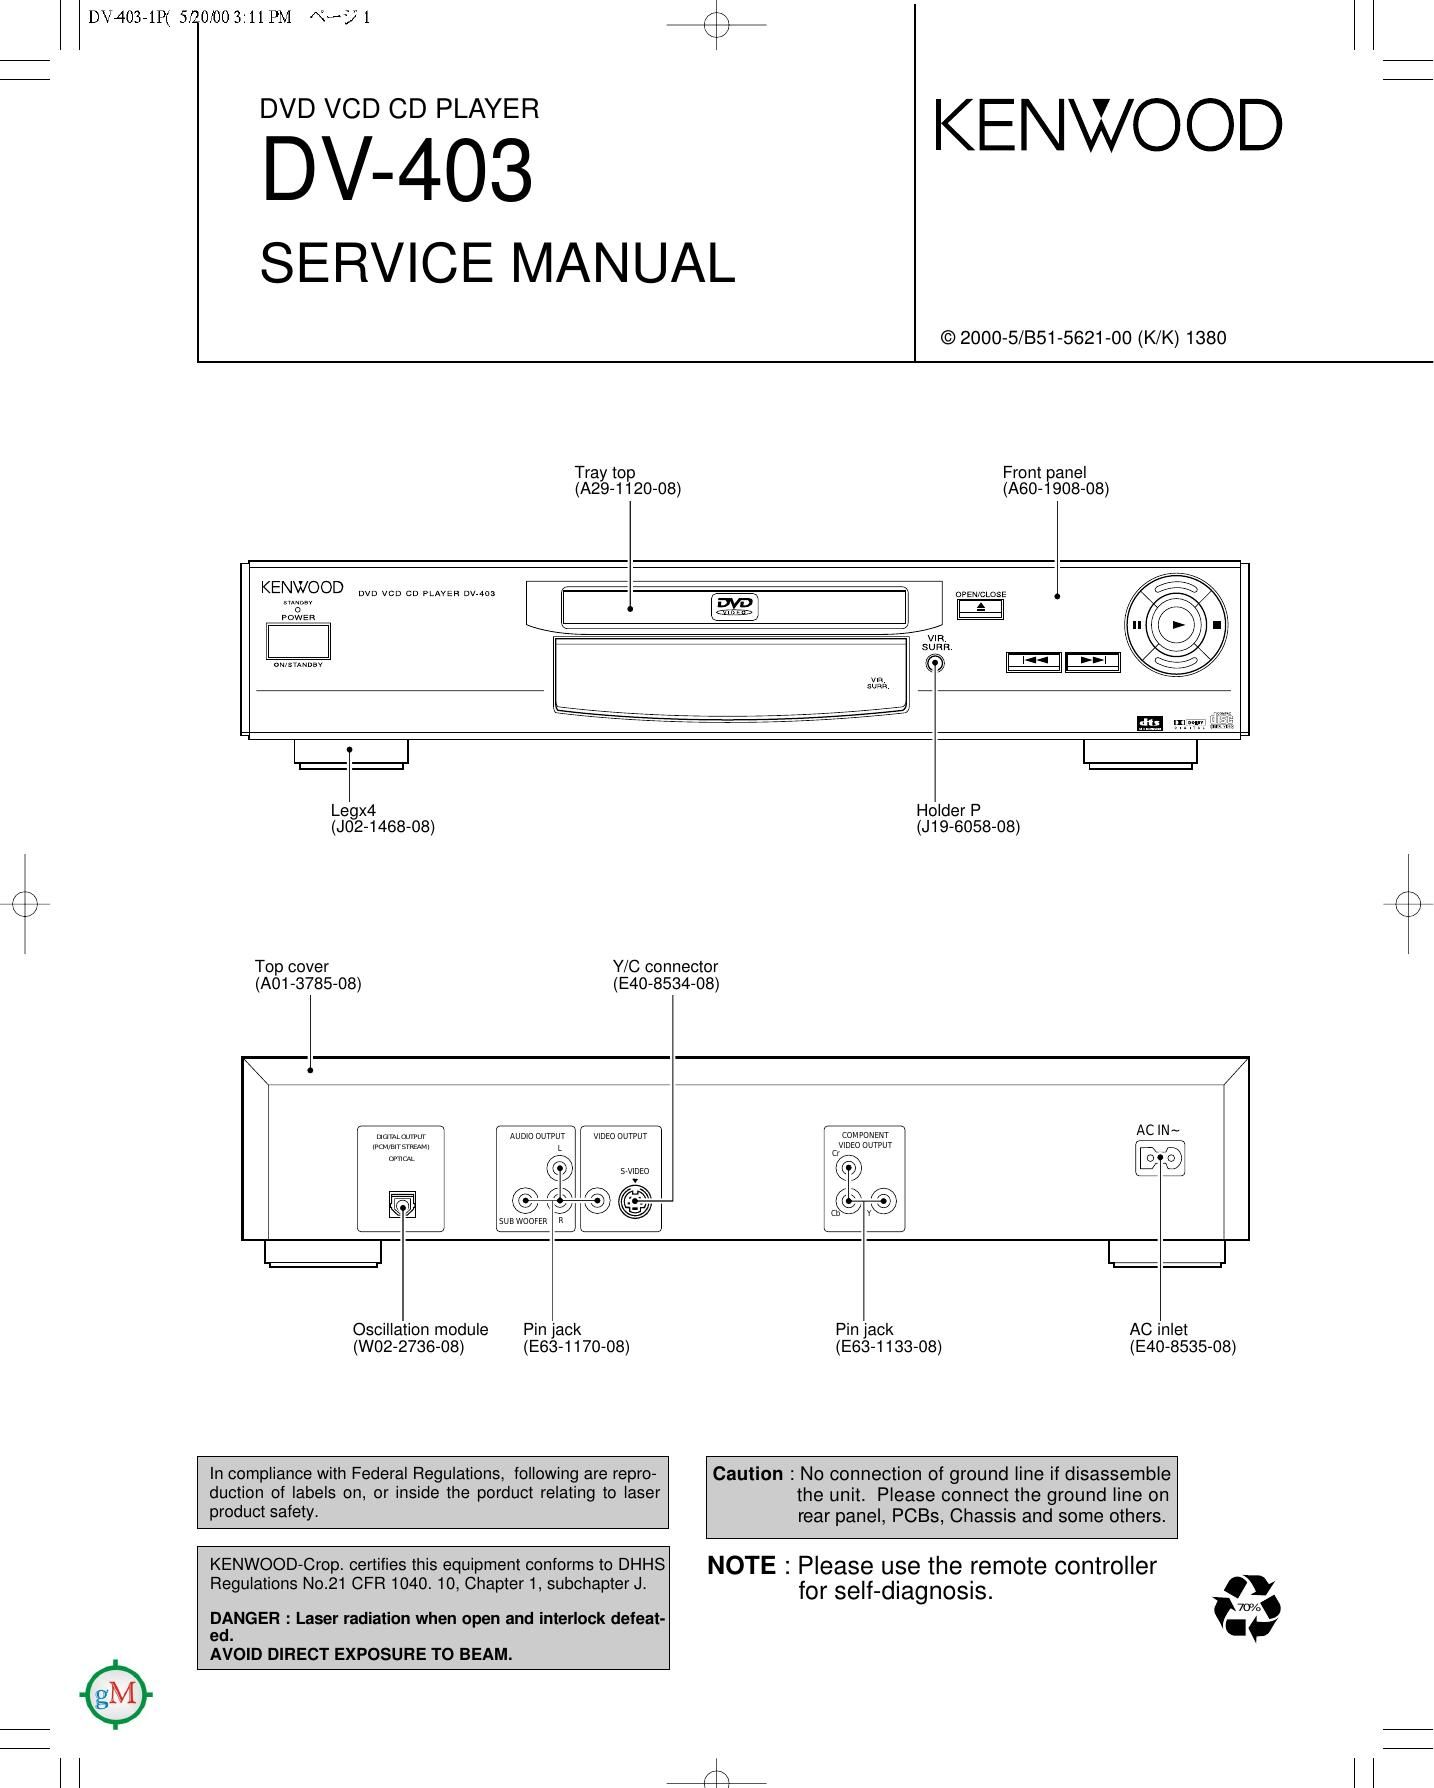 Kenwood DV 403 Service Manual